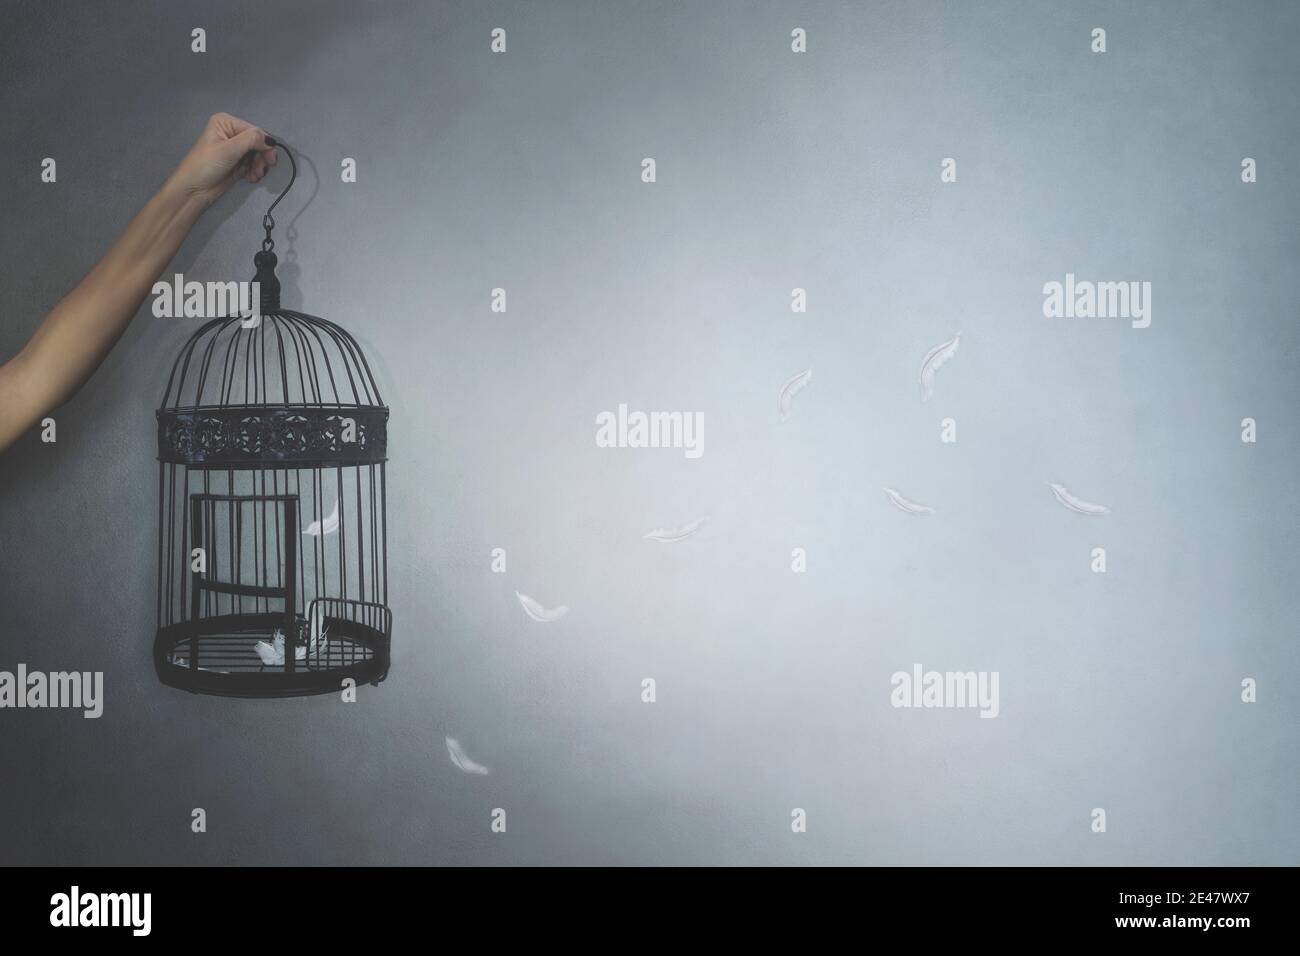 la personne donne la liberté à un oiseau enfermé dans une cage, des plumes volantes, concept de liberté Banque D'Images